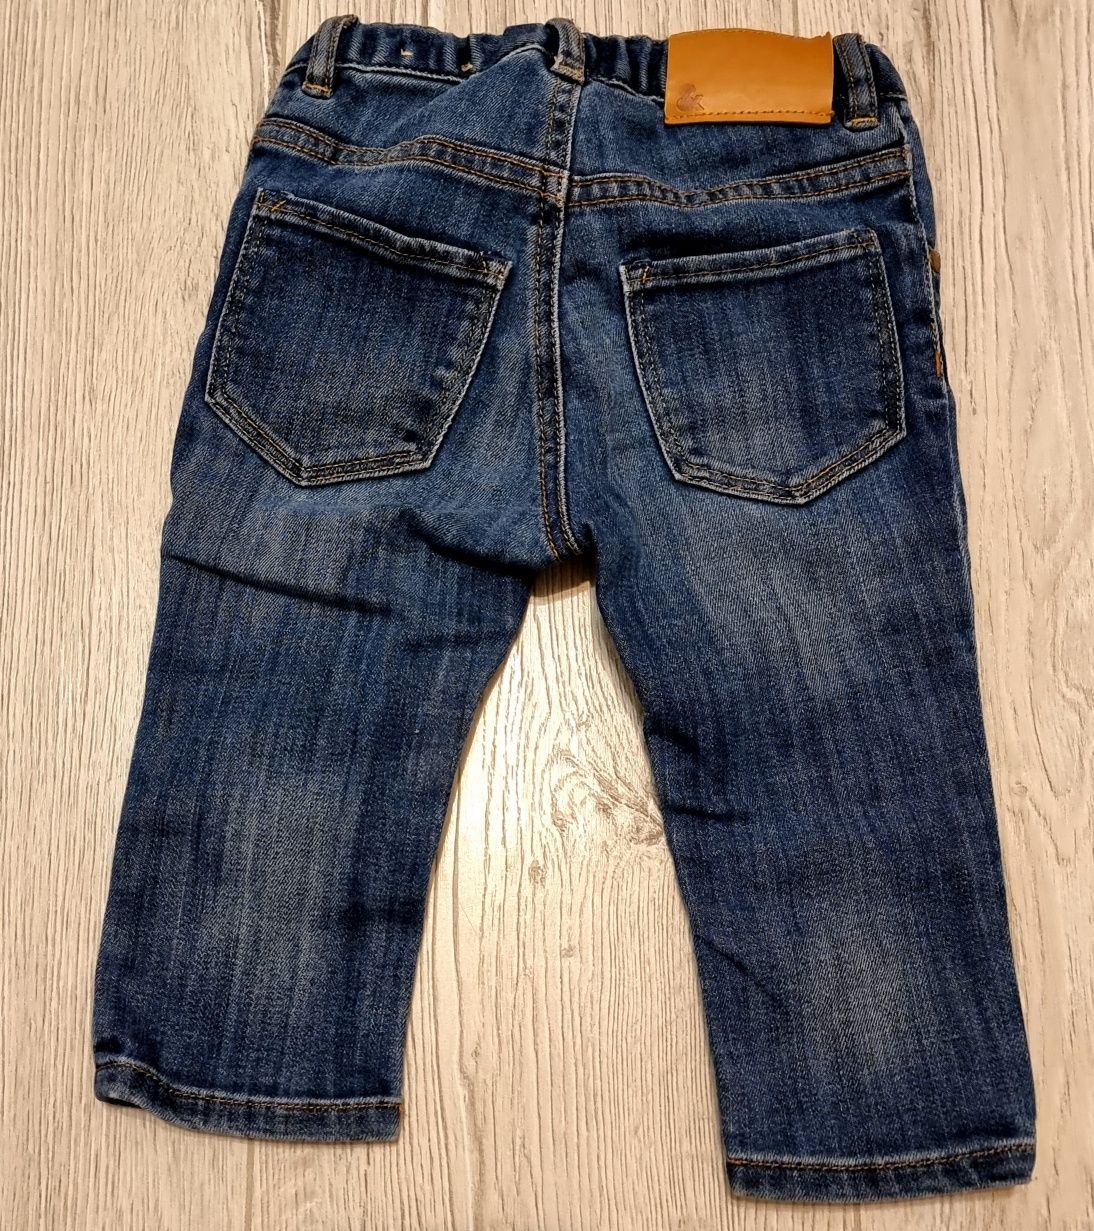 Spodnie, jeansy, hm, h&m, rozmiar 74